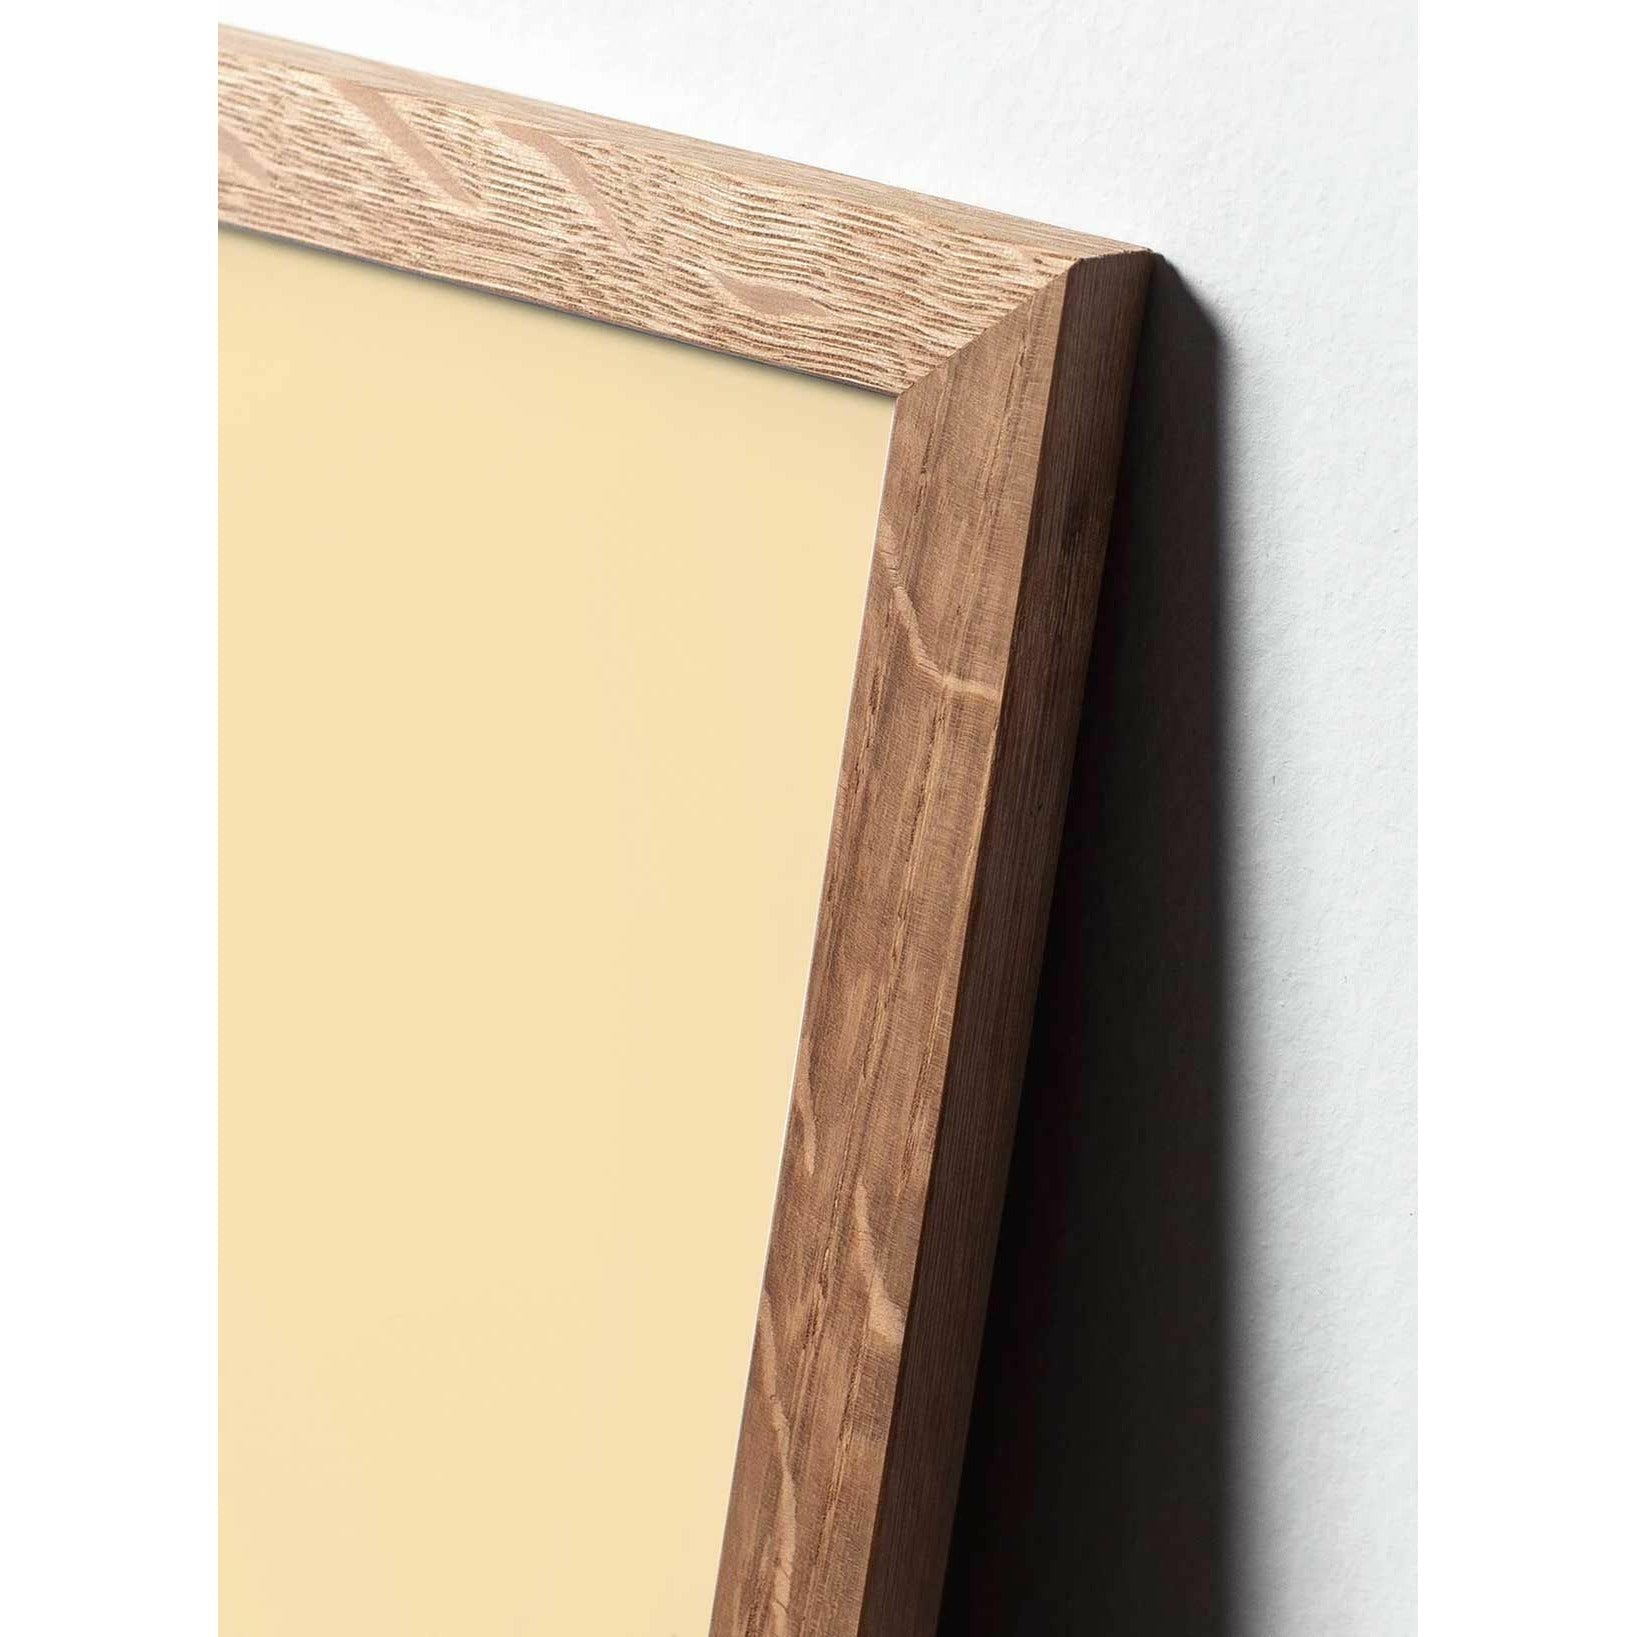 Brainchild Eierlijnposter, frame gemaakt van licht hout 50x70 cm, blauwe achtergrond